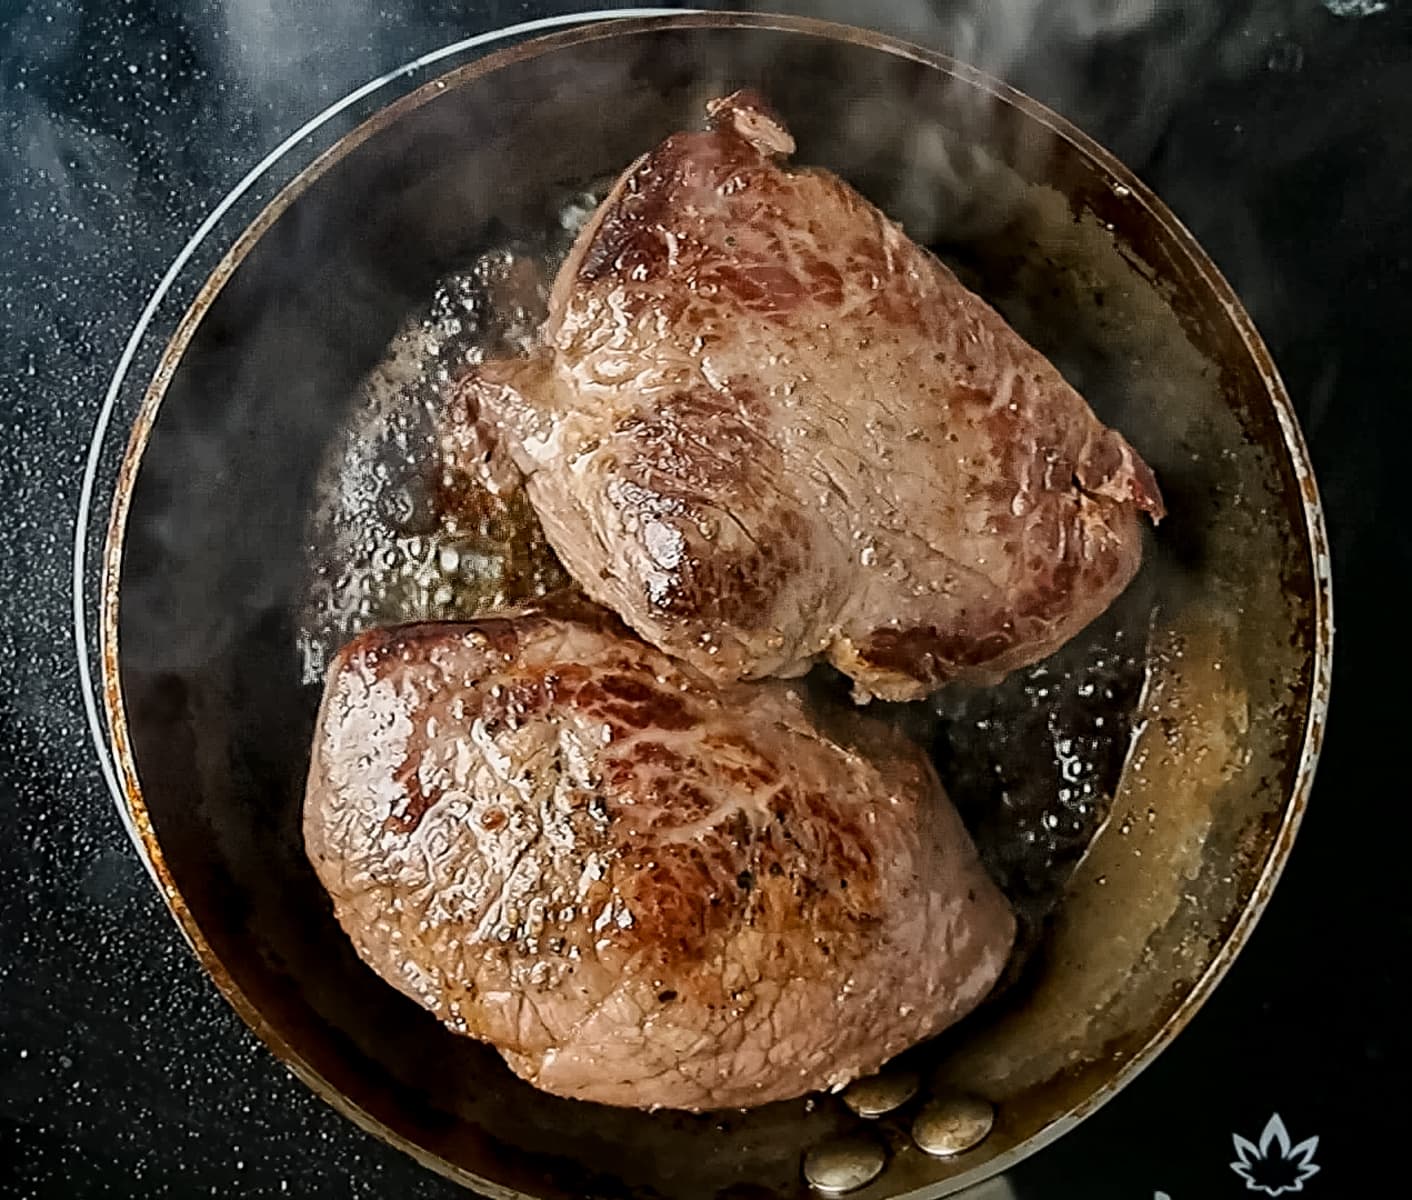 How to Sous Vide Steak (Filet Mignon or Sirloin)